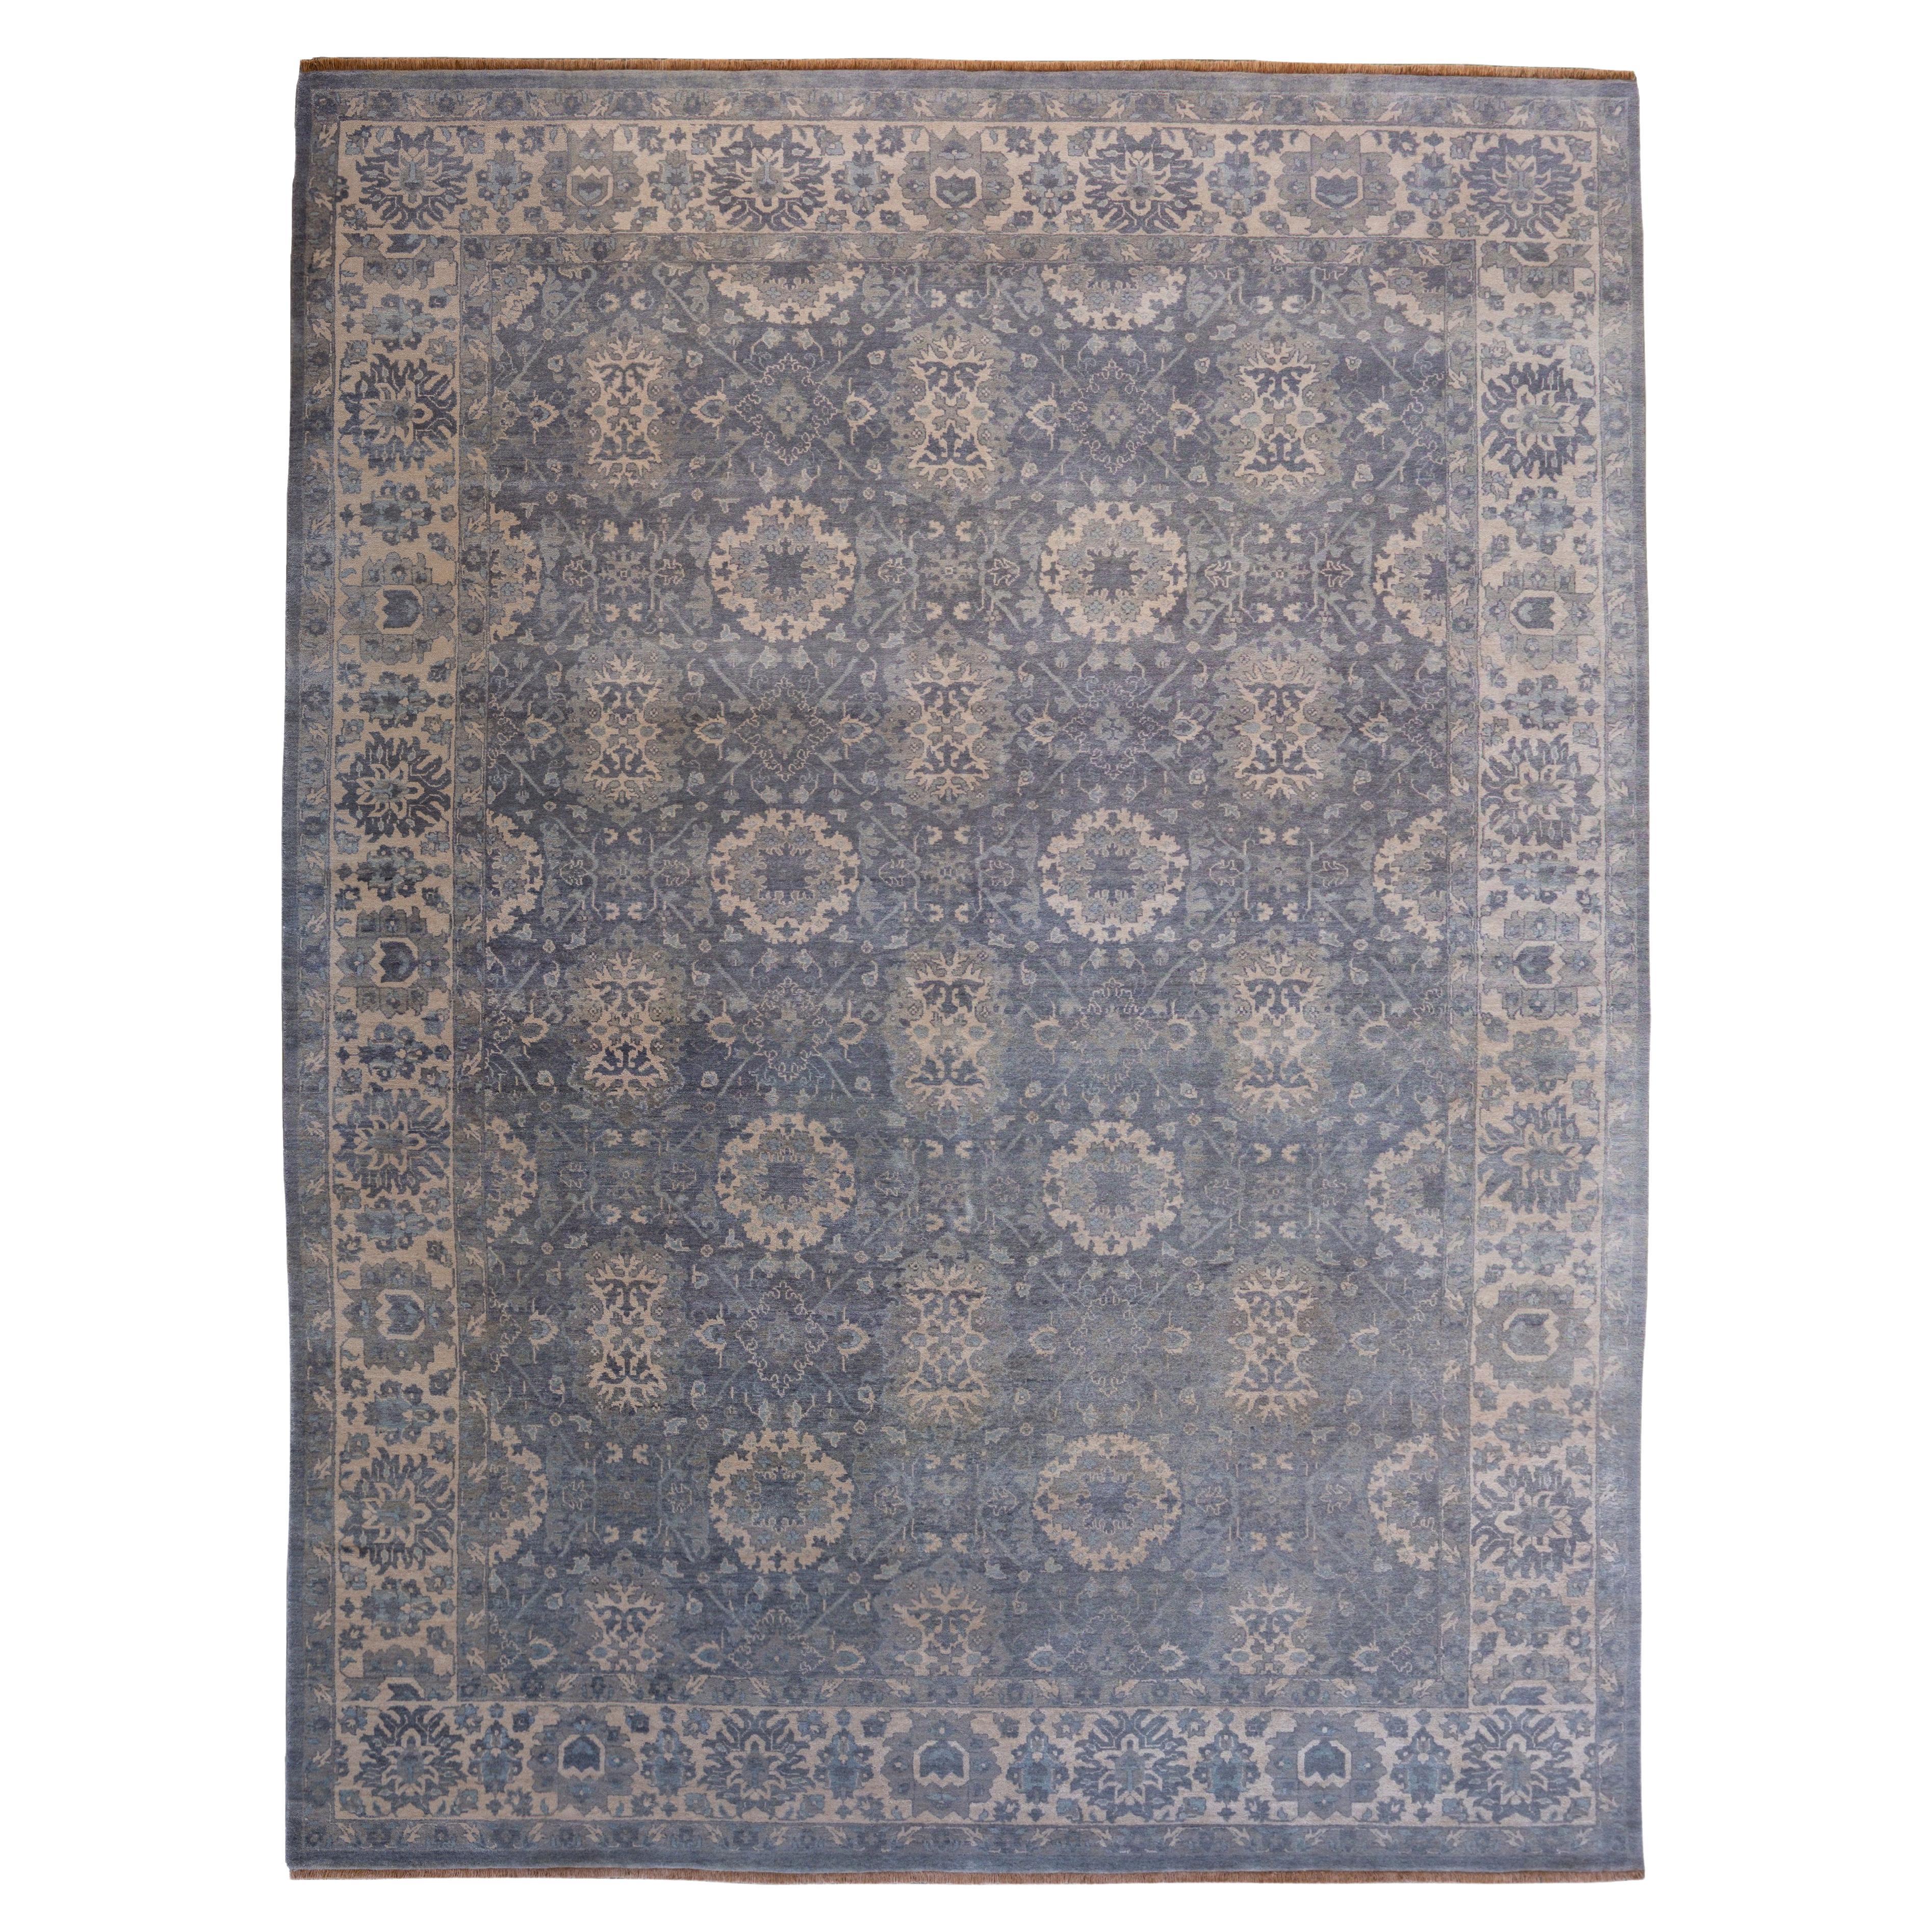 Moderner grauer handgeknüpfter persischer Teppich aus Wolle, 9' x 12'